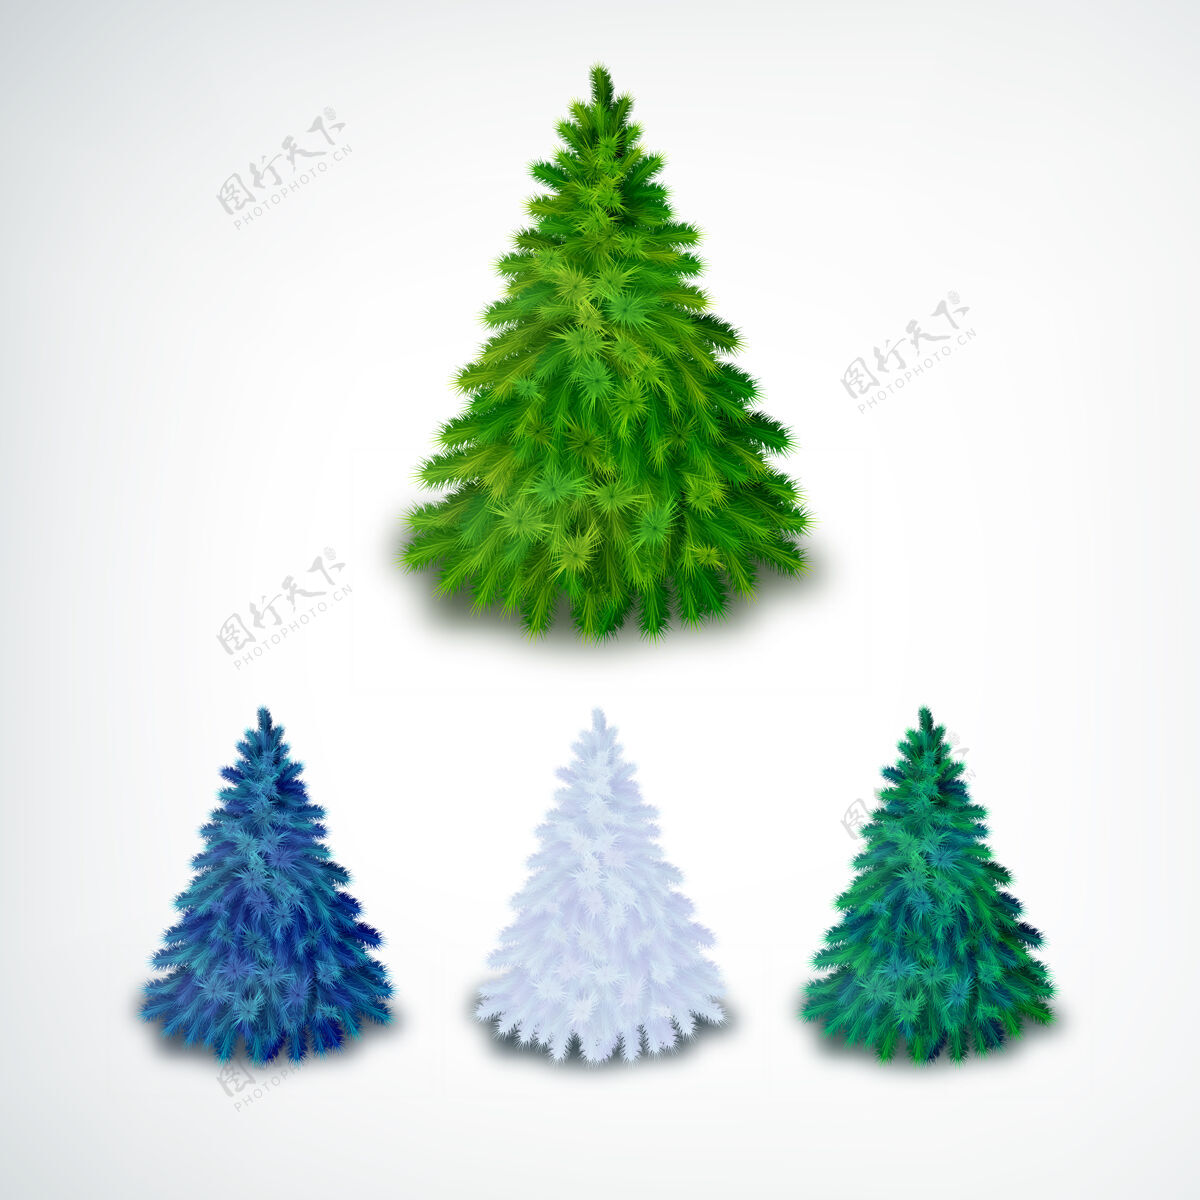 节日现实的针叶圣诞树集不同颜色的白色常绿杉木雪